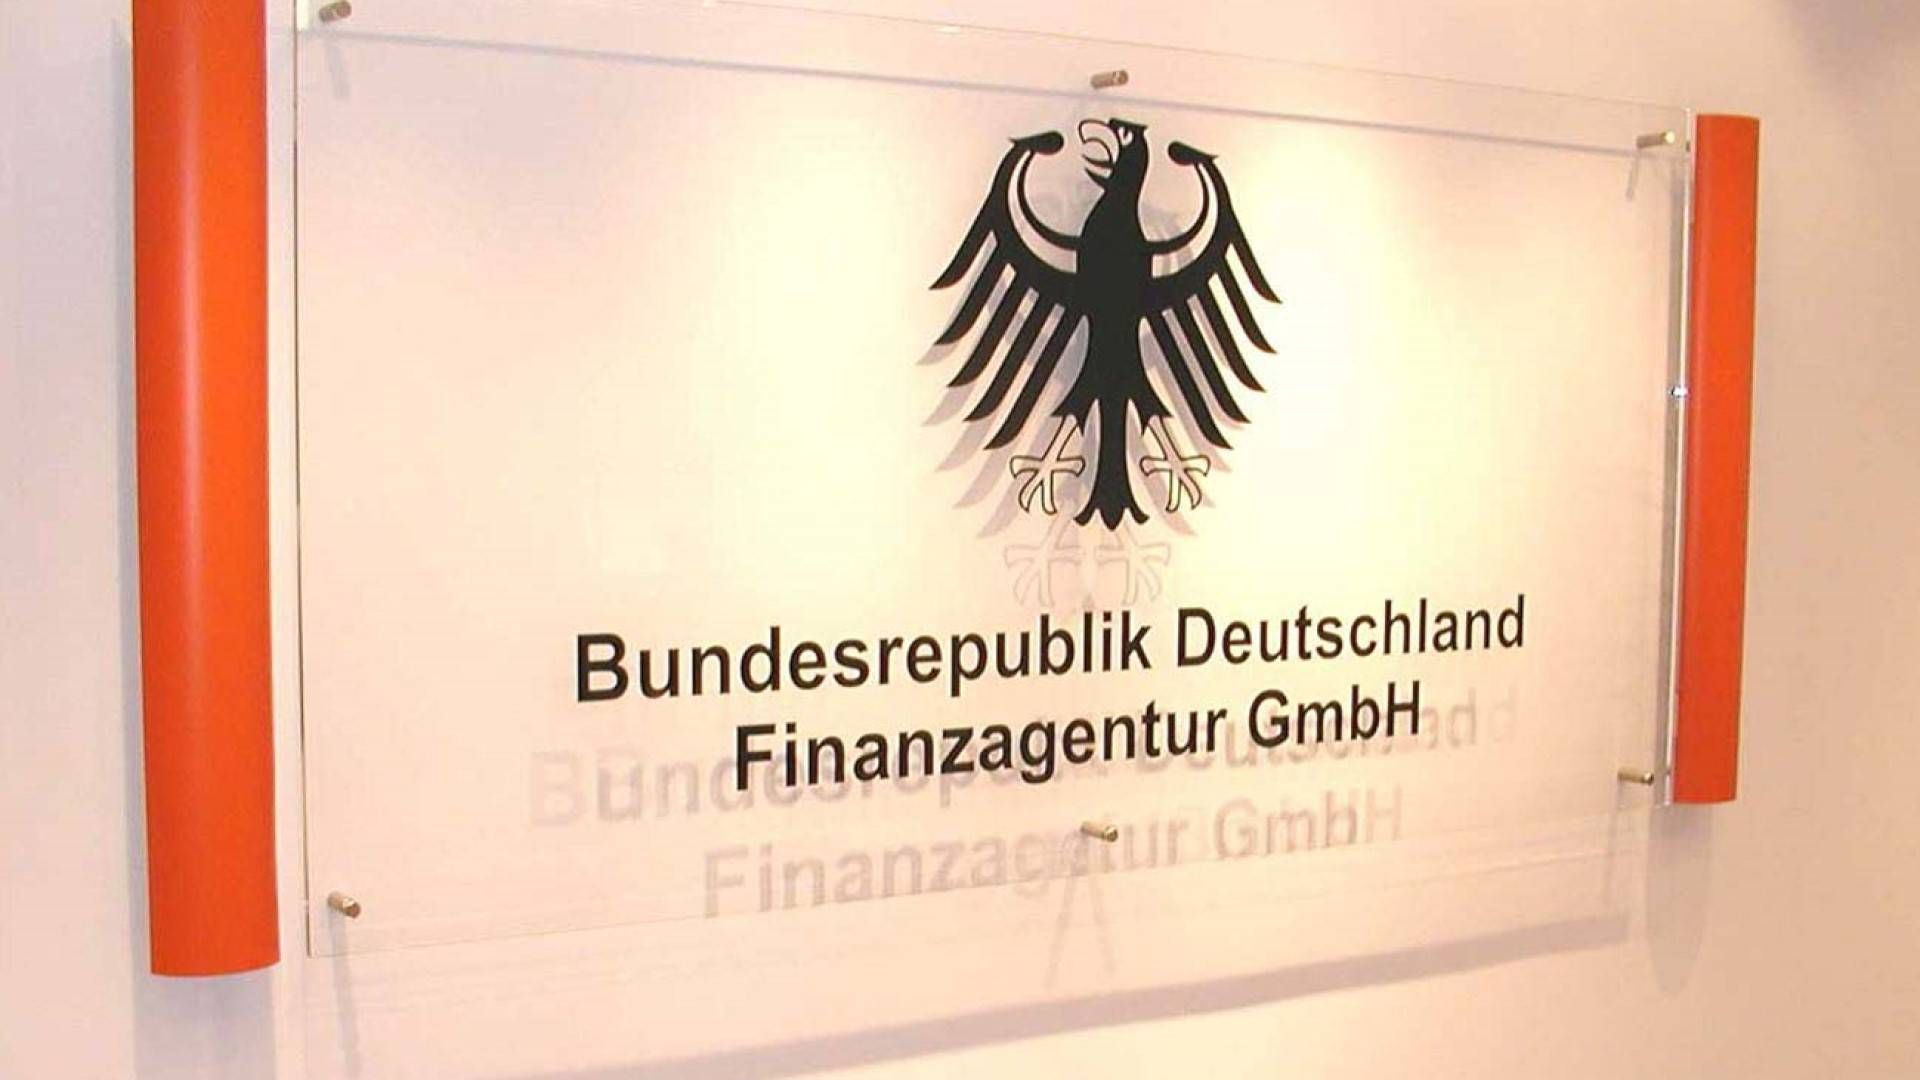 Aufhellung bei der Bad Bank FMS, die der Finanzagentur unterstellt ist. | Foto: Bundesrepublik Deutschland Finanzagentur